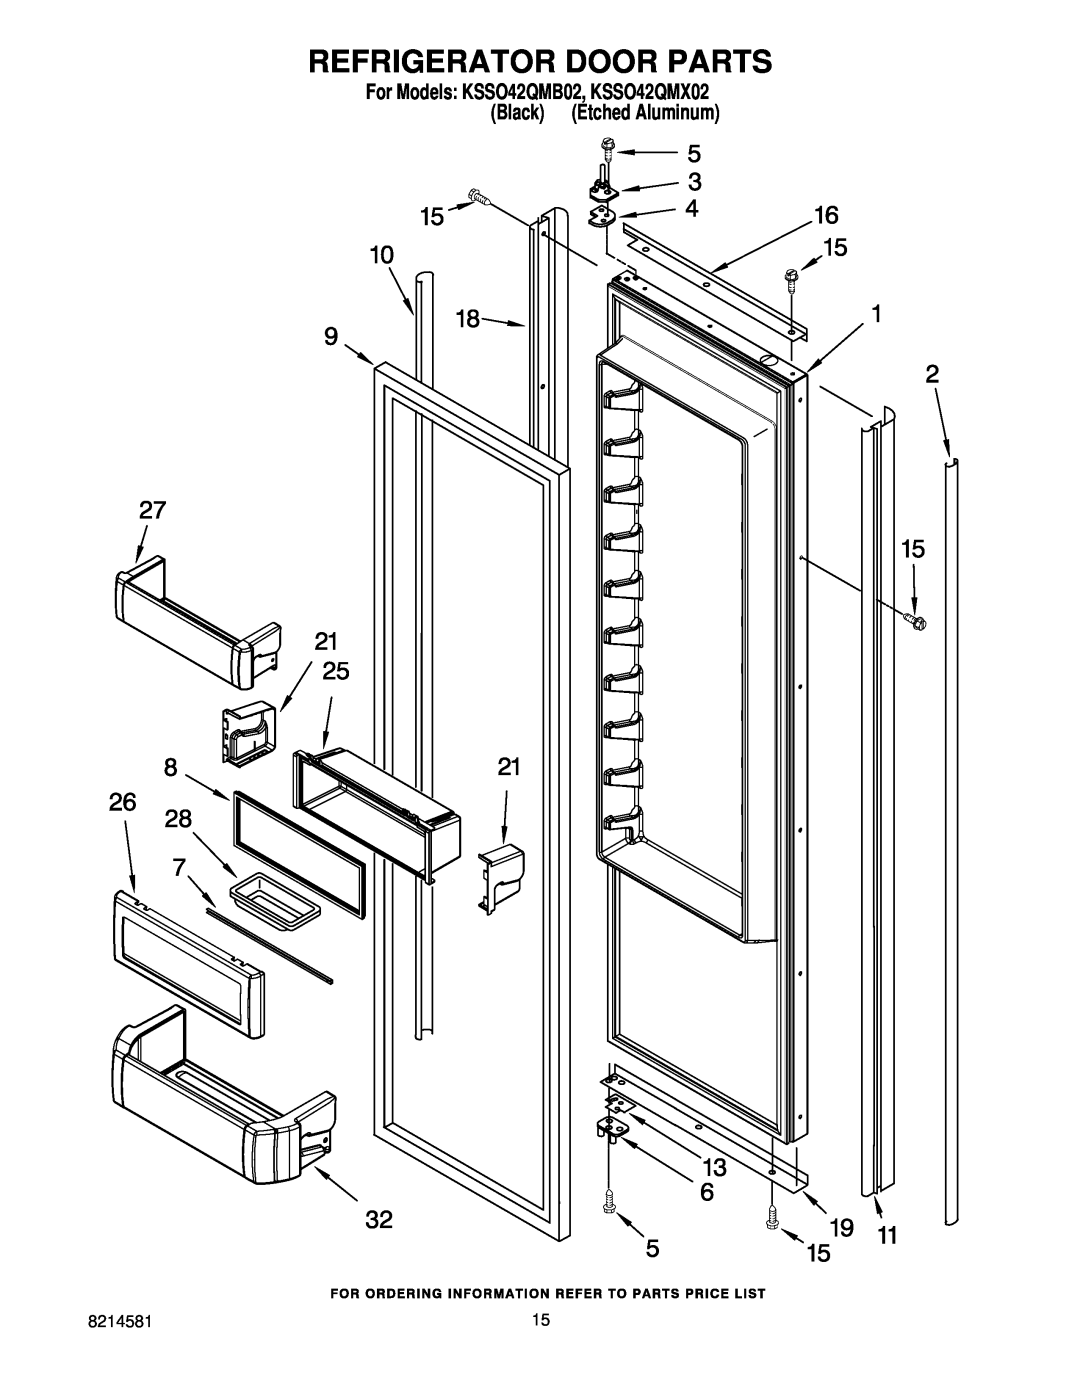 KitchenAid manual Refrigerator Door Parts, For Models KSSO42QMB02, KSSO42QMX02 Black Etched Aluminum 